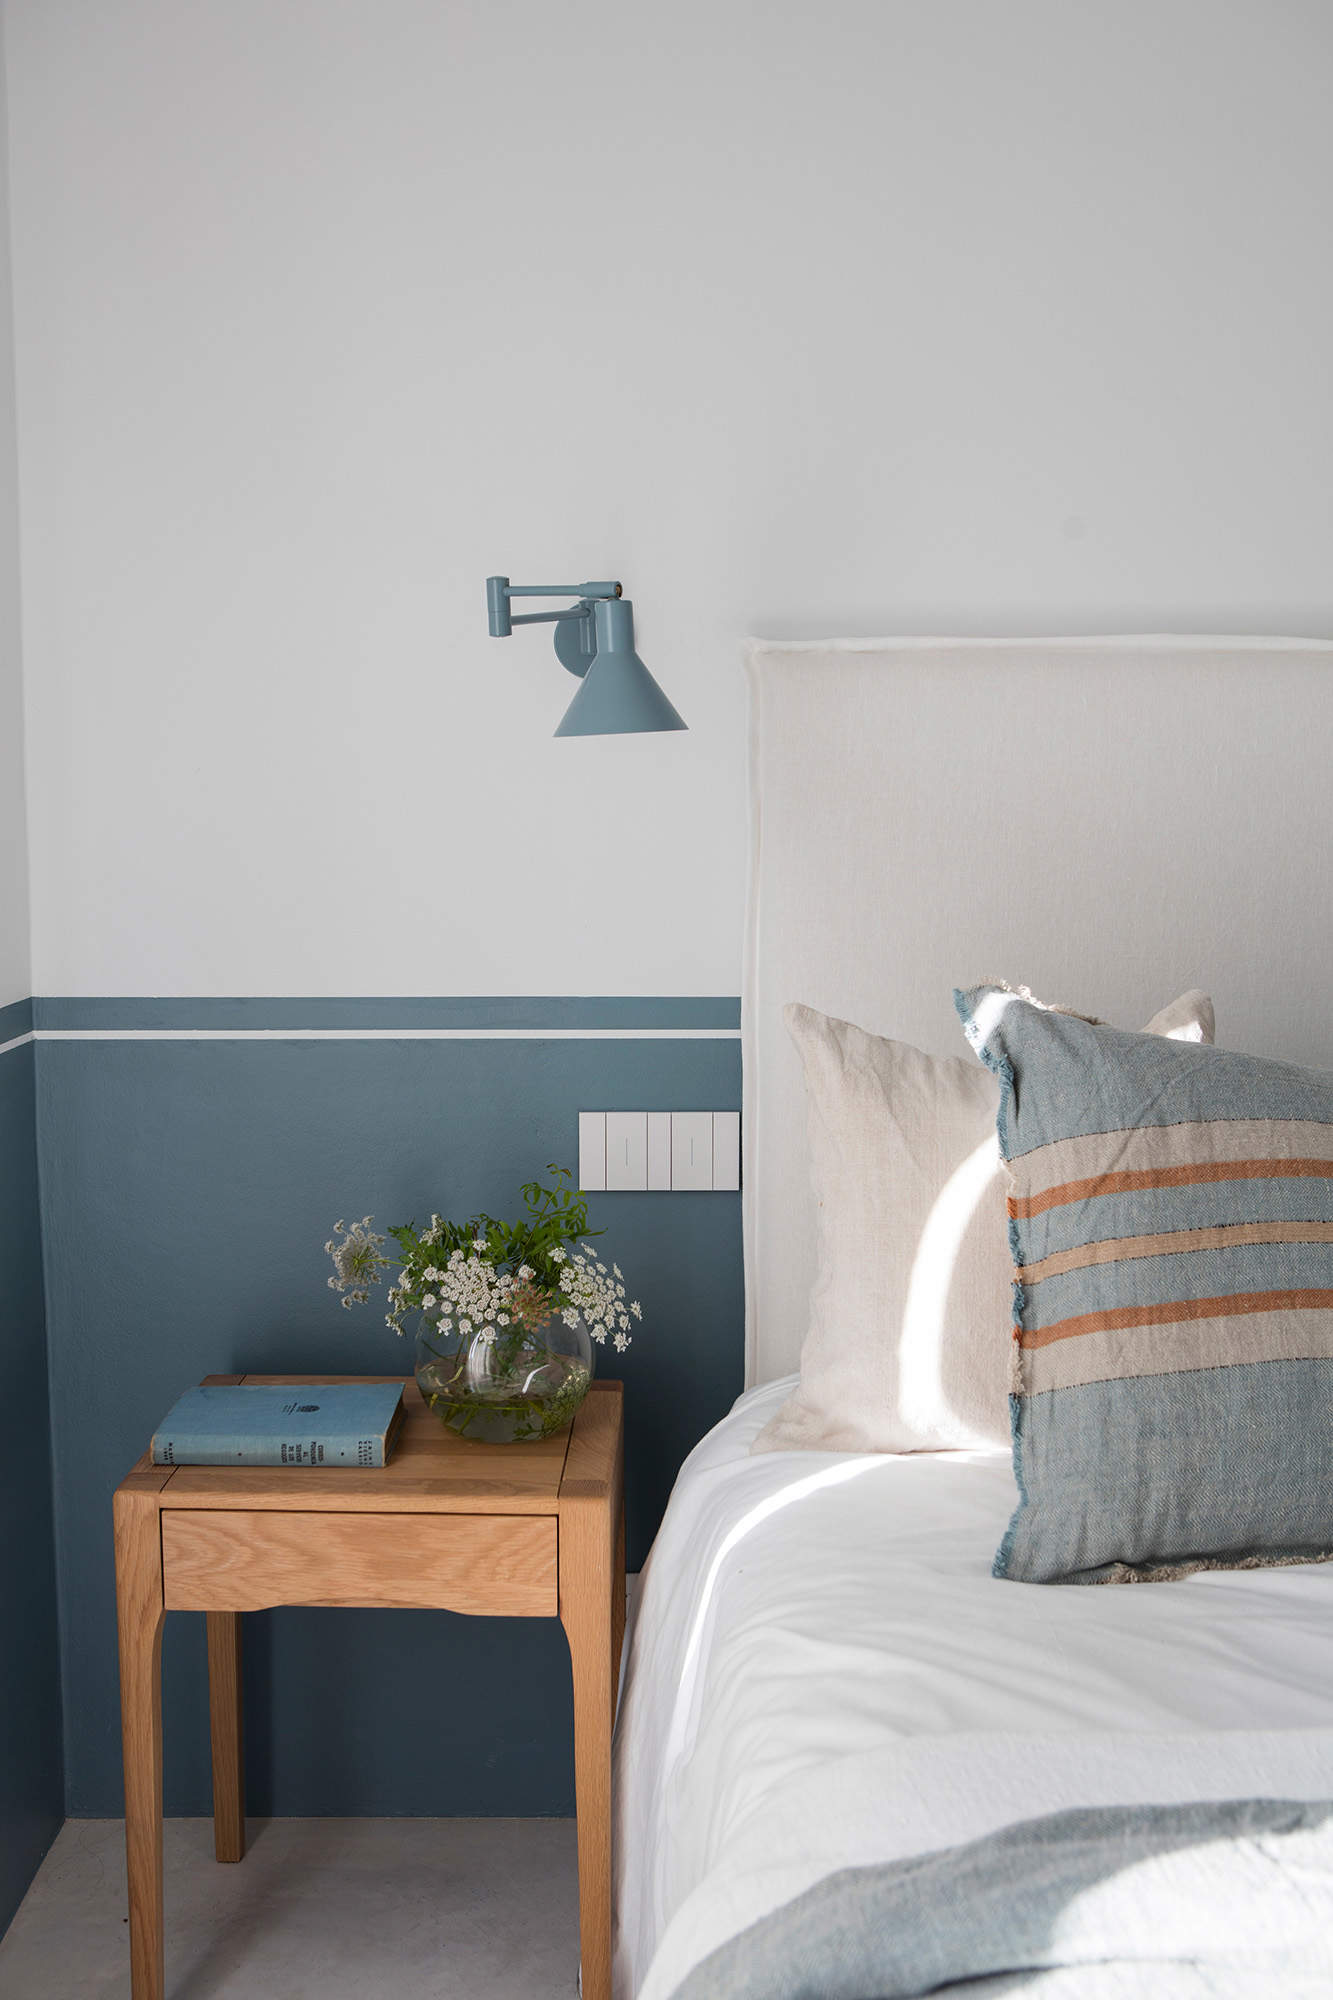 Dormitorio pcon zócalo en la pared pintado en azul